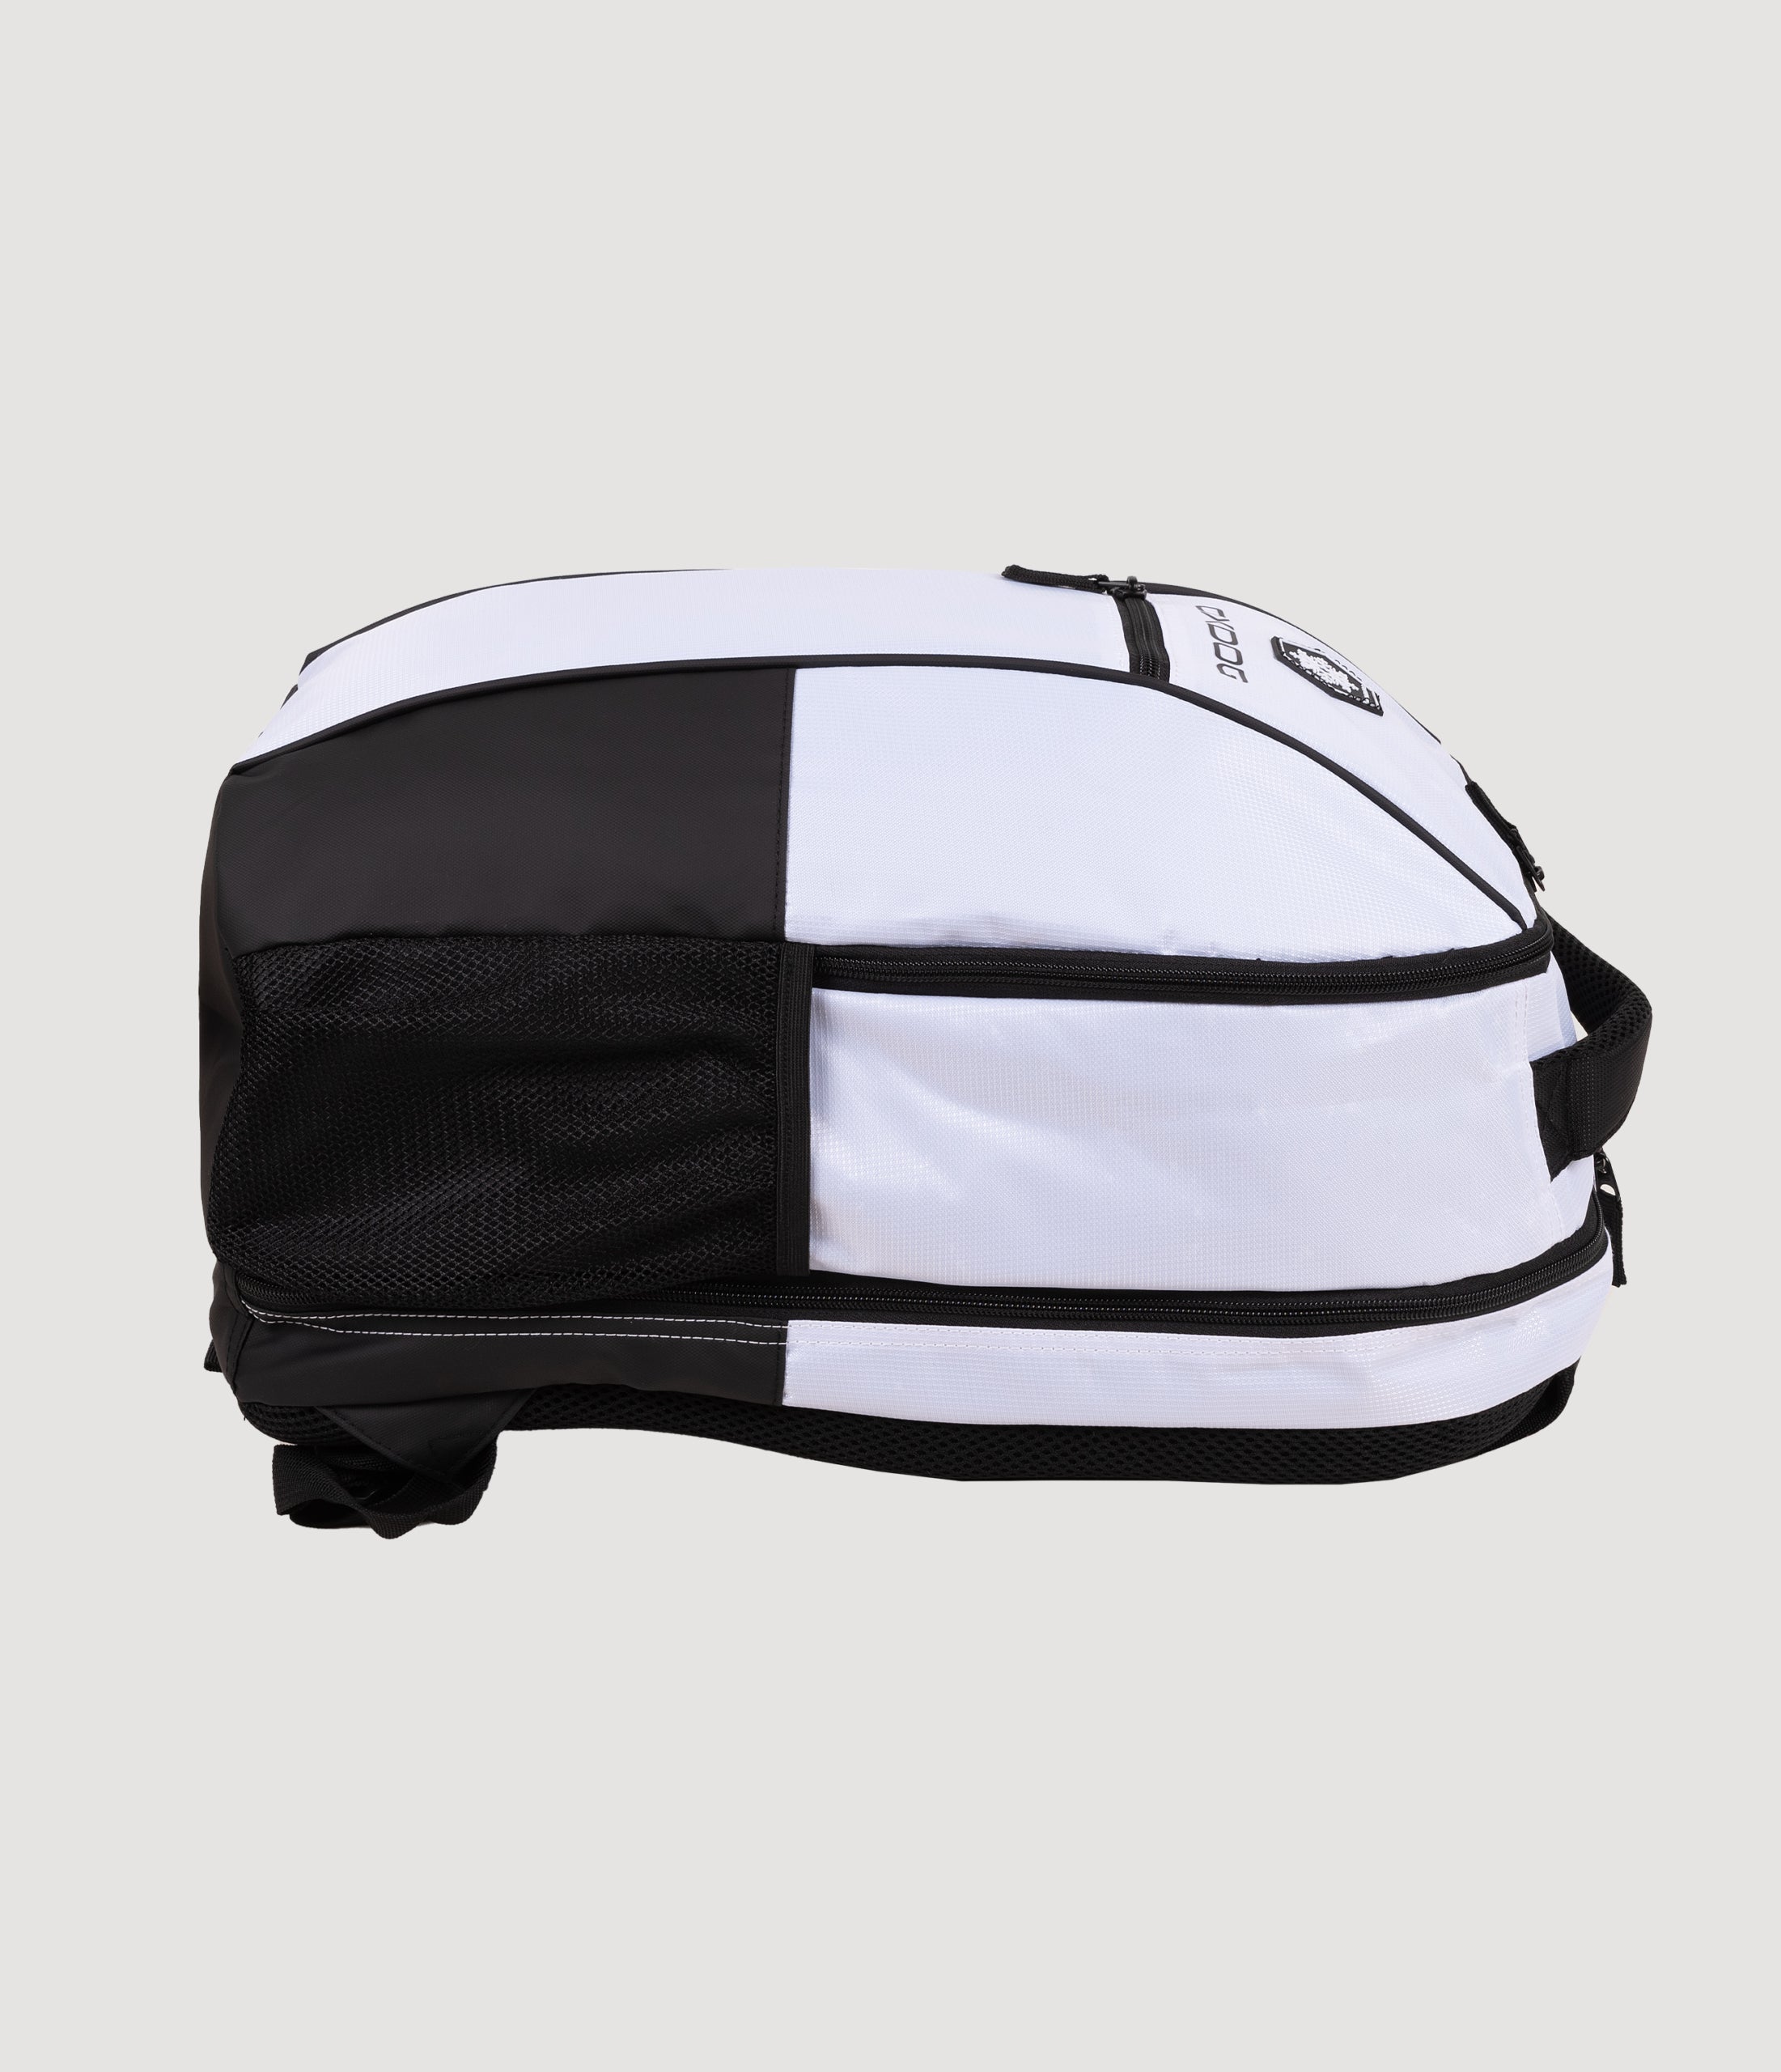 Oxdog Hyper Backpack (White/Black)